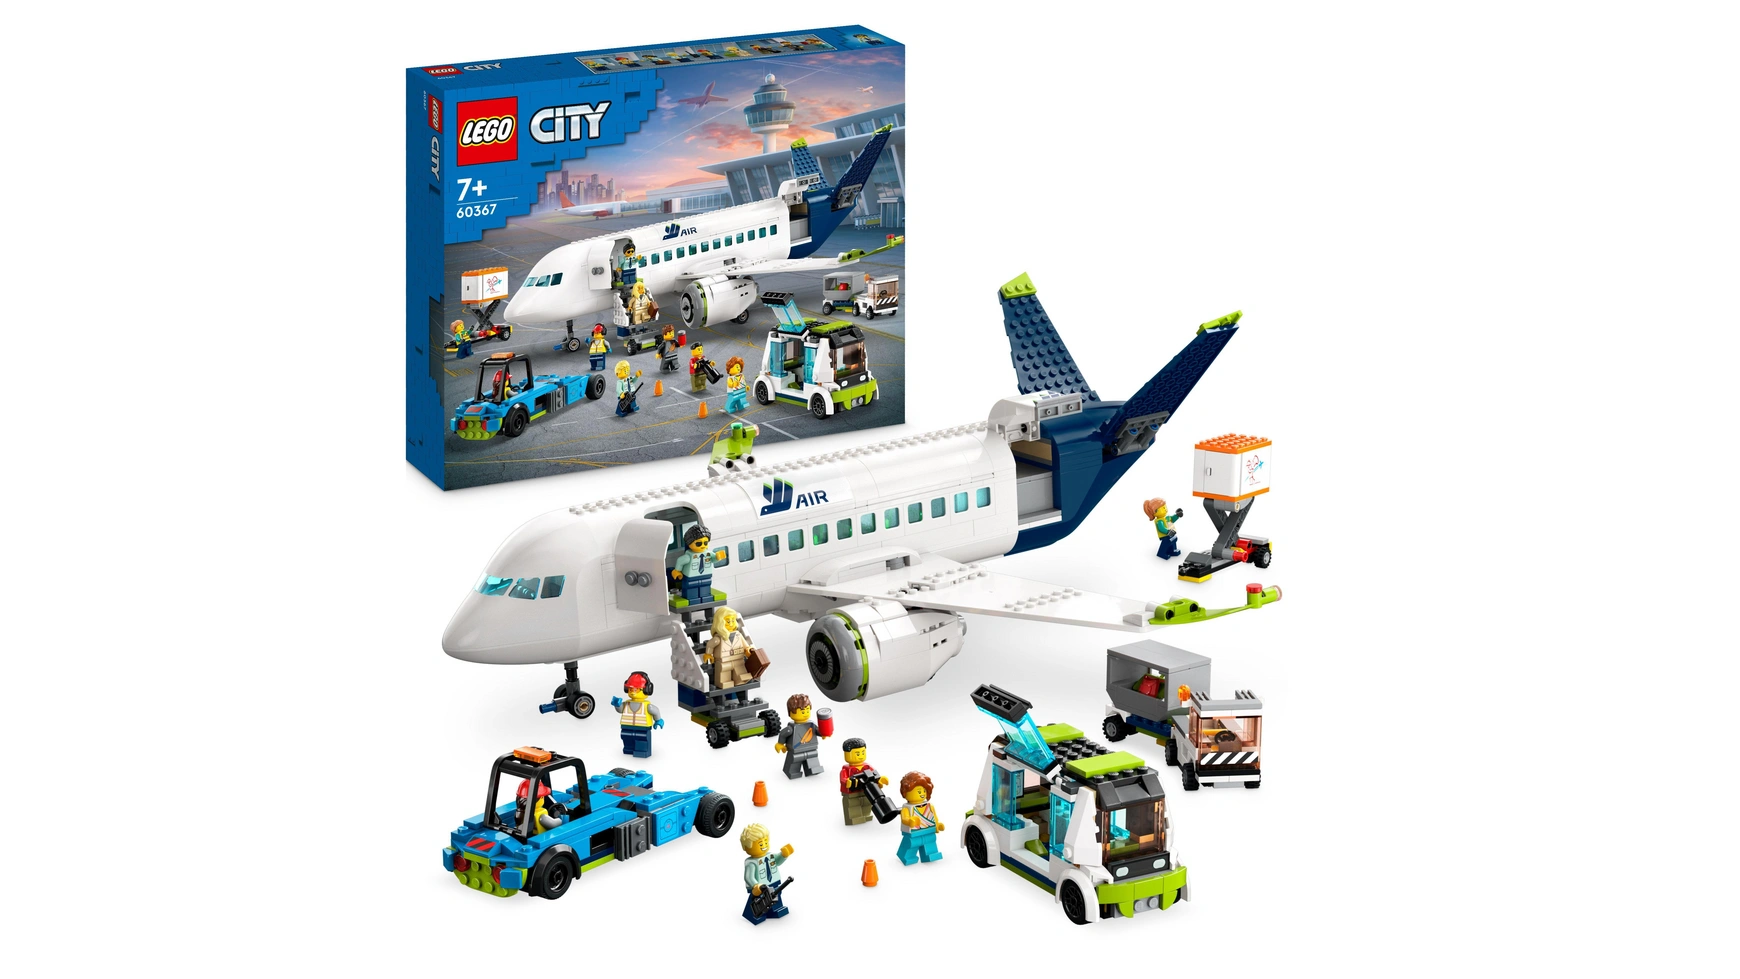 Lego City Набор пассажирских самолетов, большая модель самолета с транспортными средствами конструктор пассажирский экспресс поезд lego 60337 city